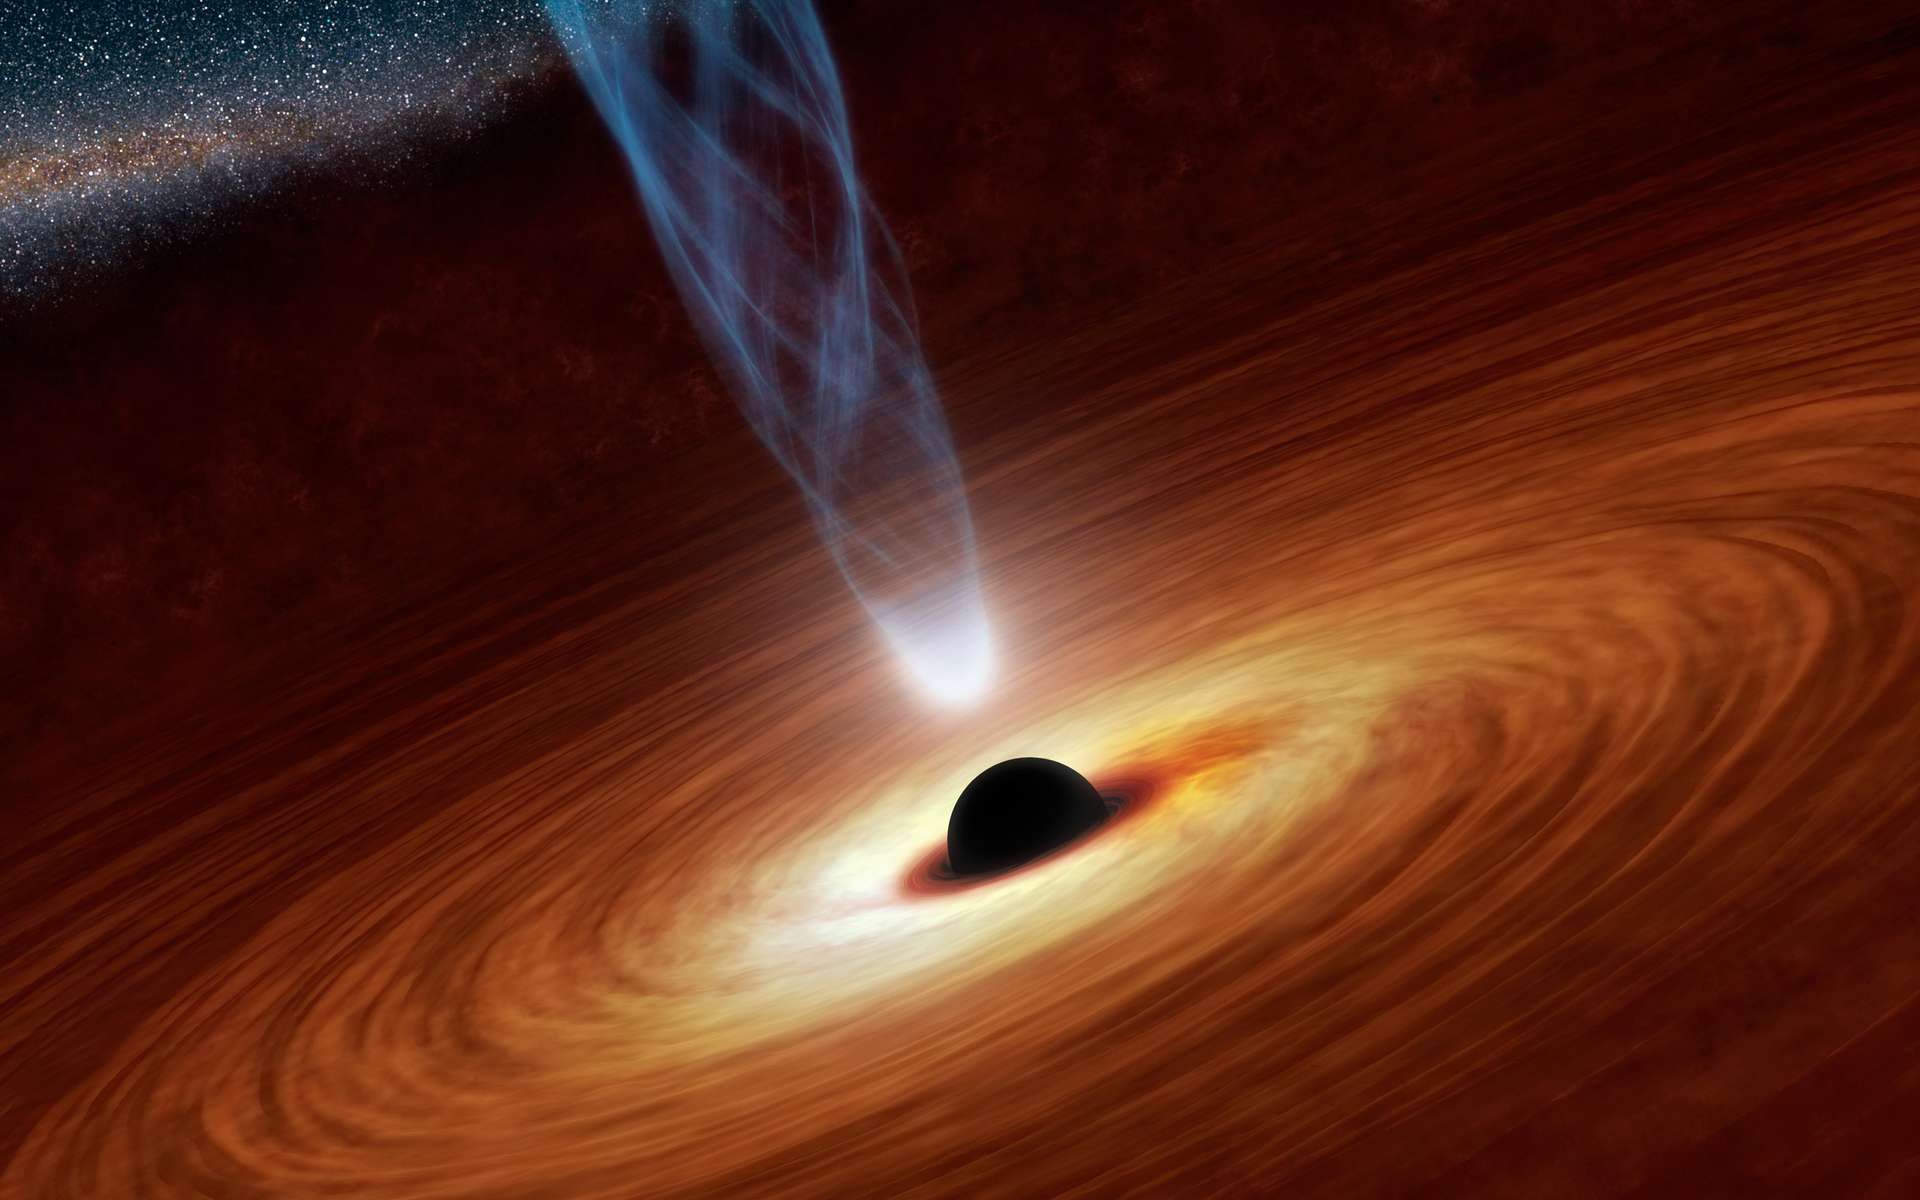 Vue d'artiste d'un trou noir, avec son disque d'accrétion et un jet de plasma en émanant. © Nasa, JPL/Caltech